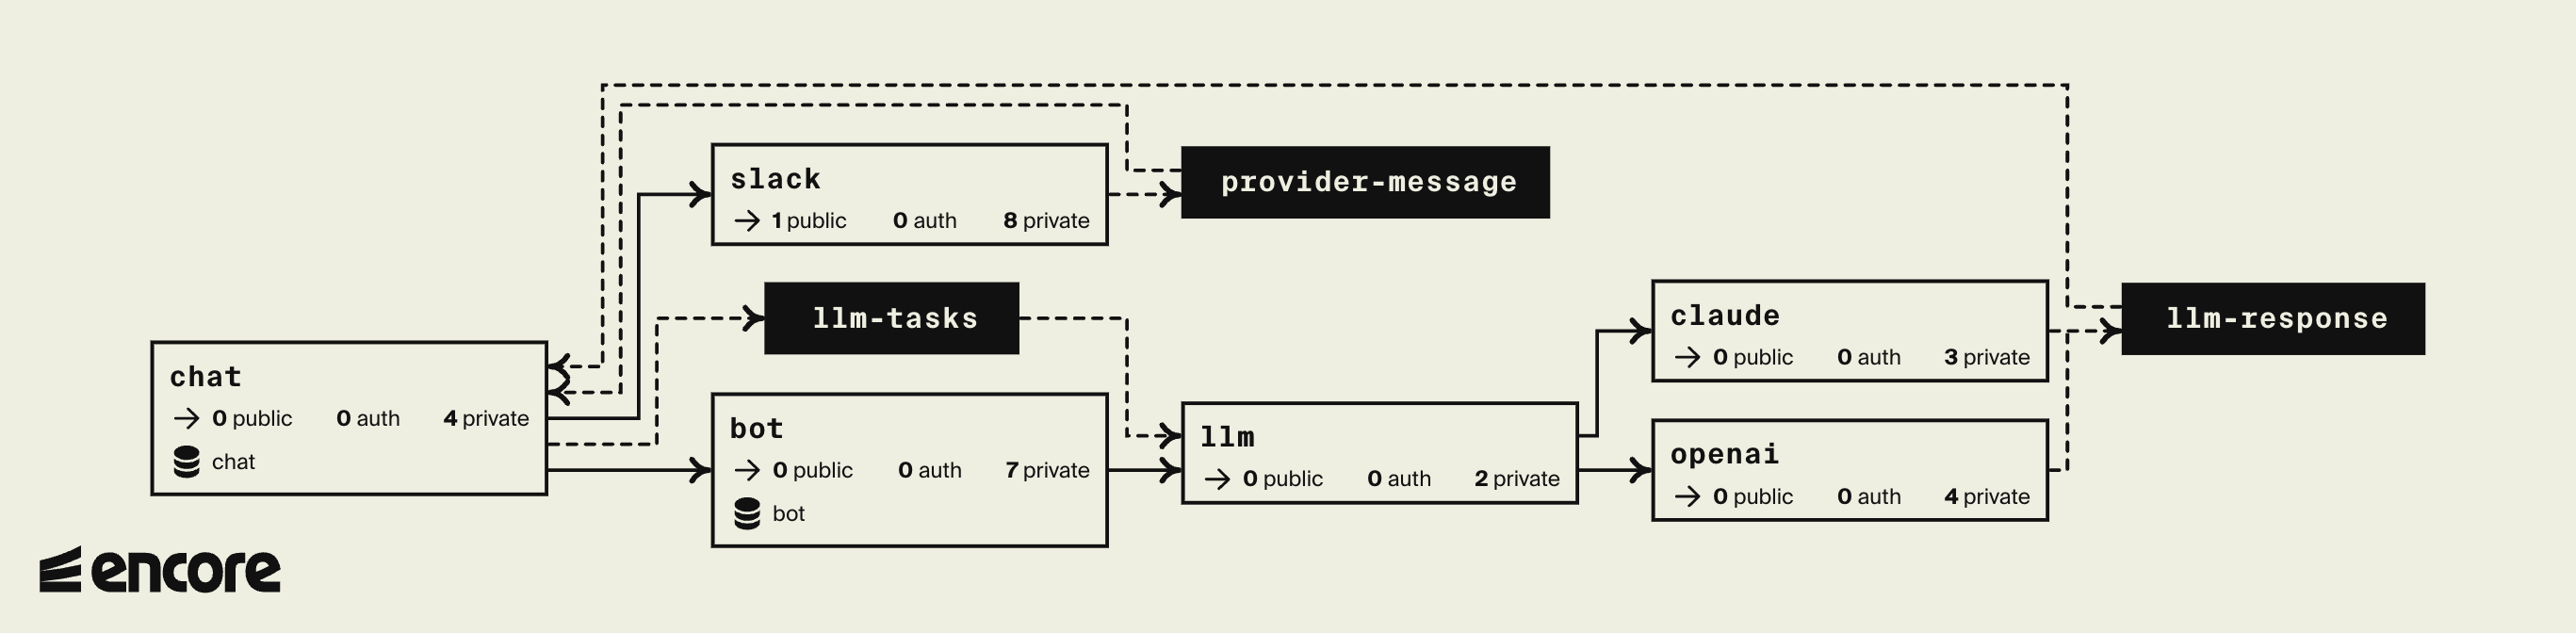 System design diagram